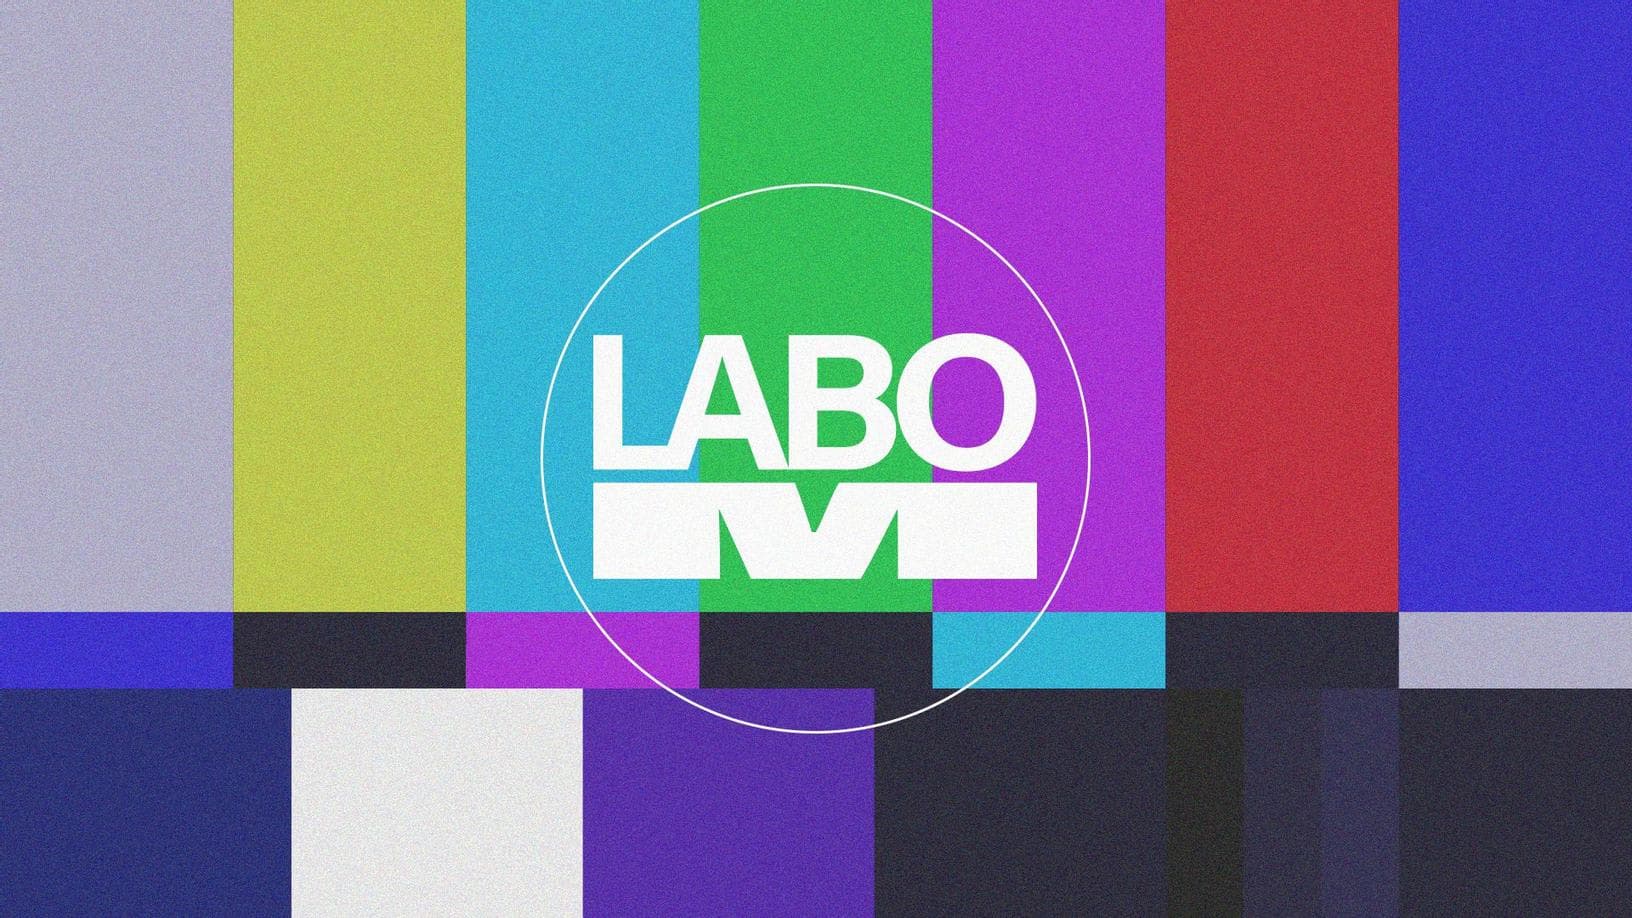 Labo-M + logo